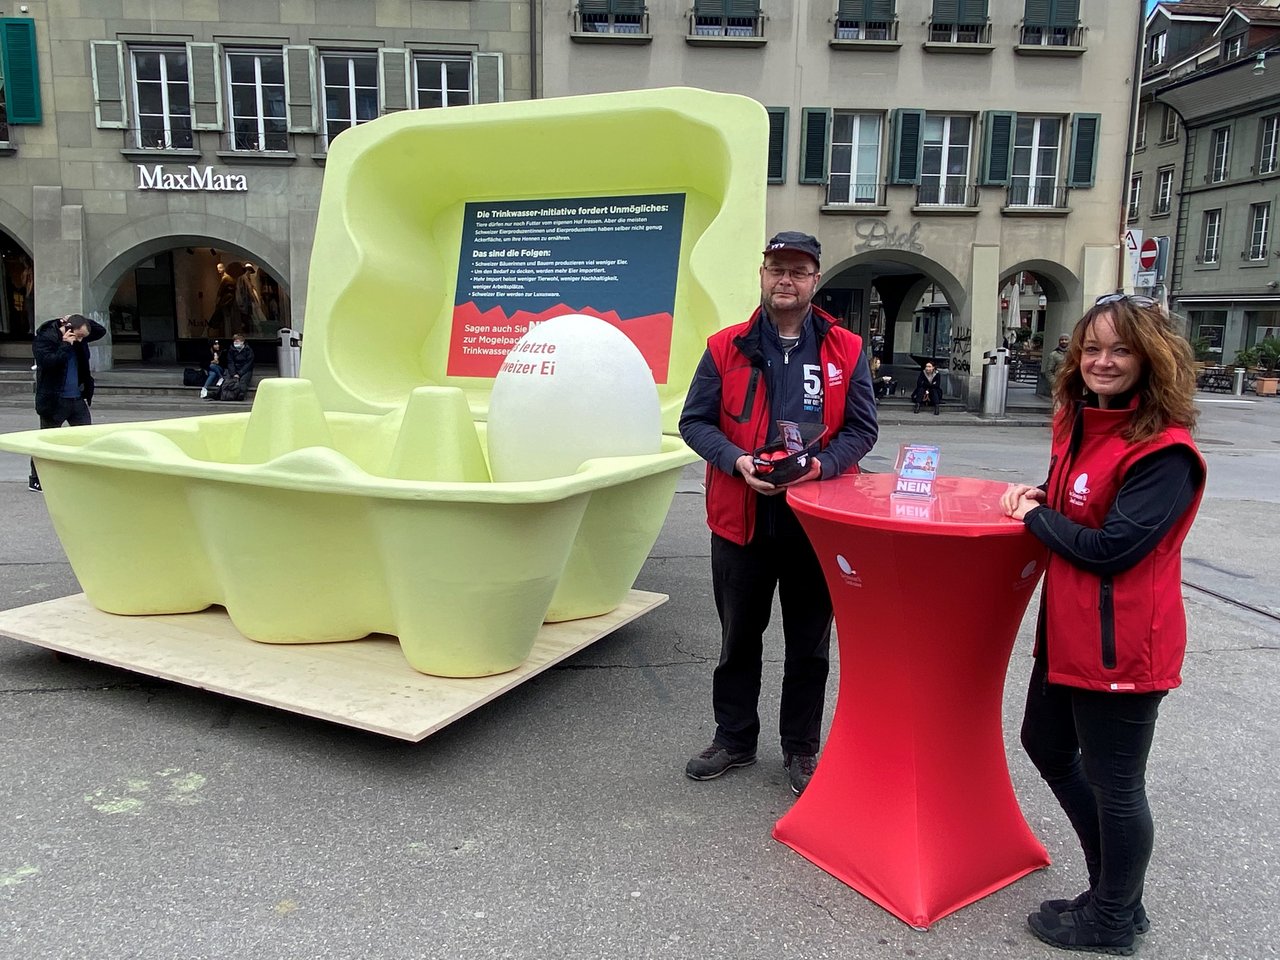 Matthias Pulfer und Karin Frederiks beim Verteilen der Eier auf dem Berner Waisenhausplatz. (Bild akr)